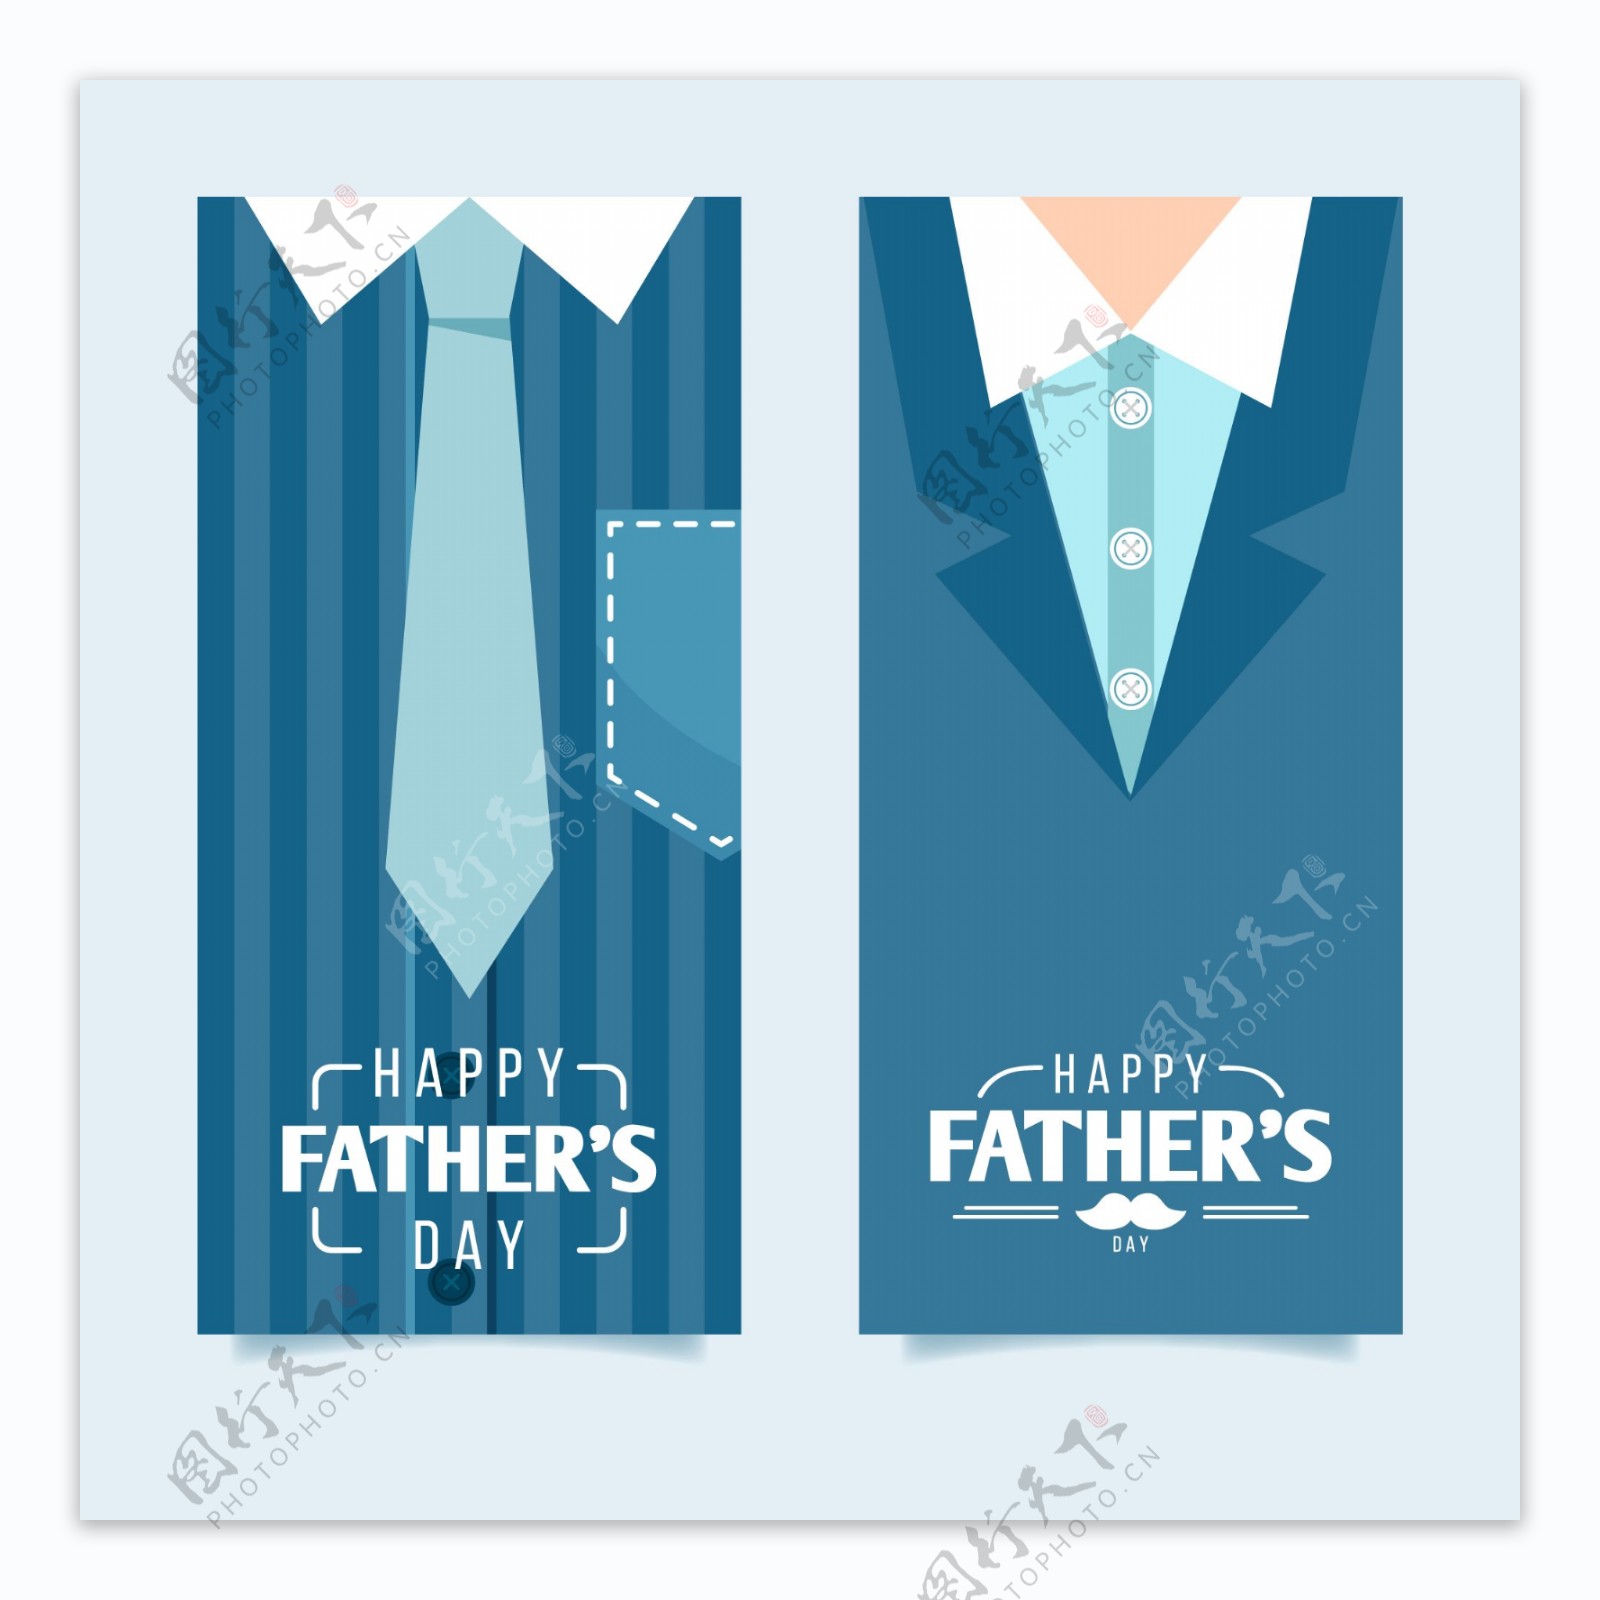 2组蓝色西装父亲节元素